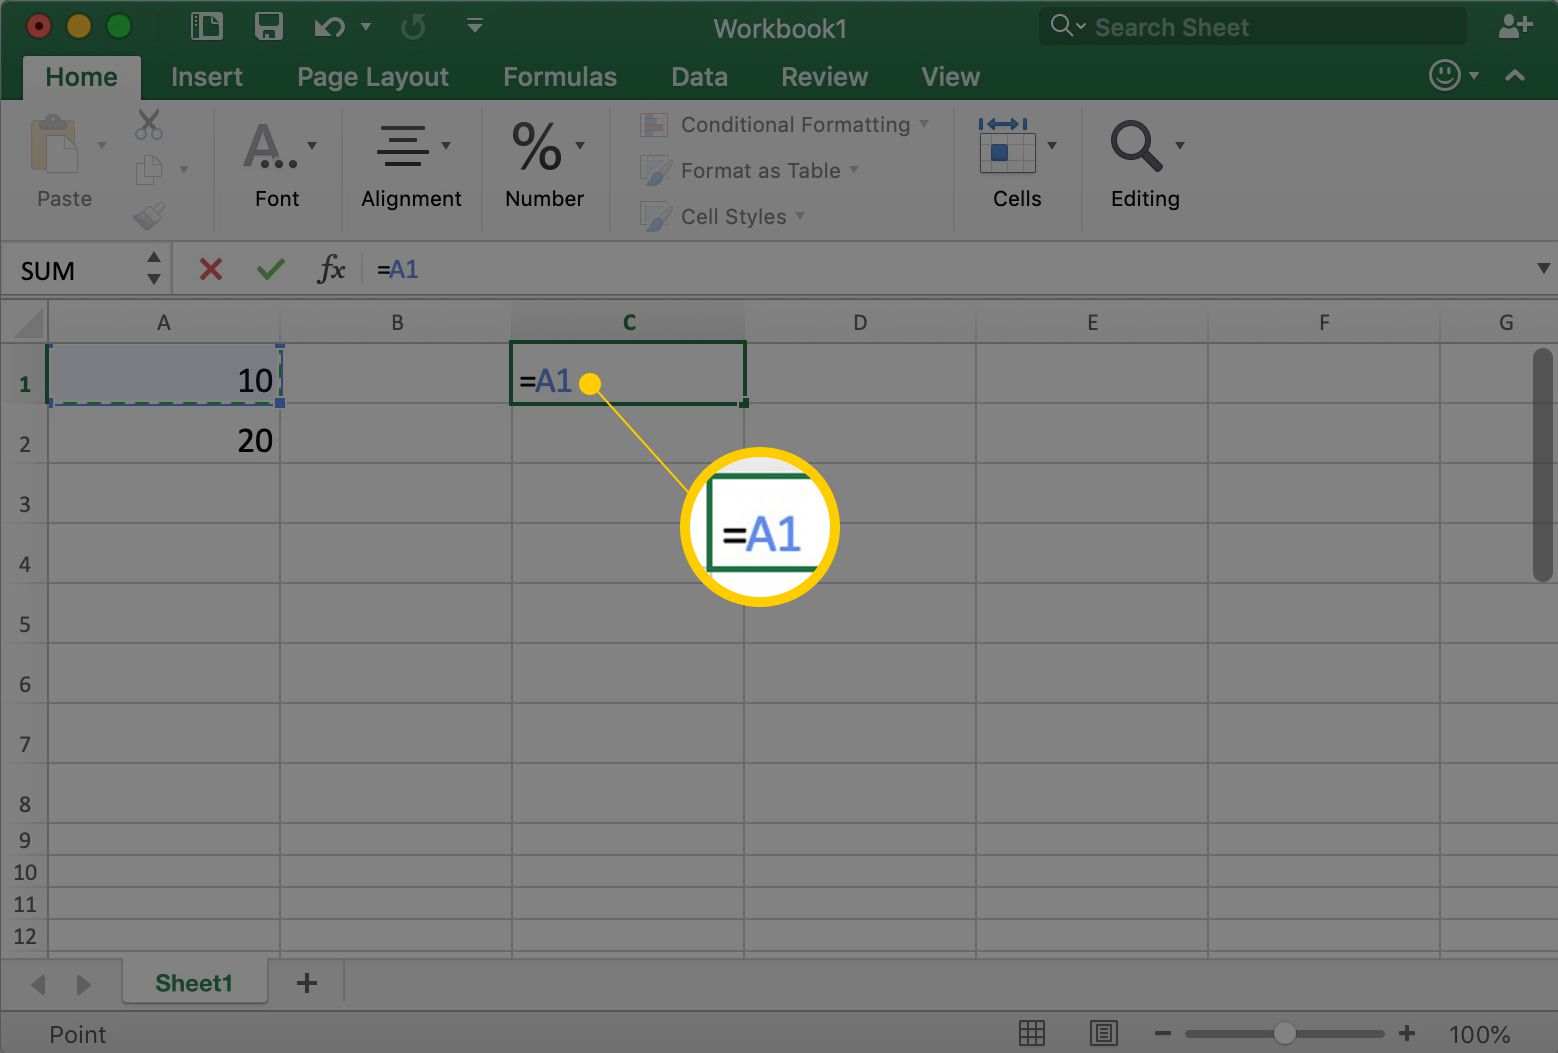 Excel zobrazuje buňku C1 a v ní = A1